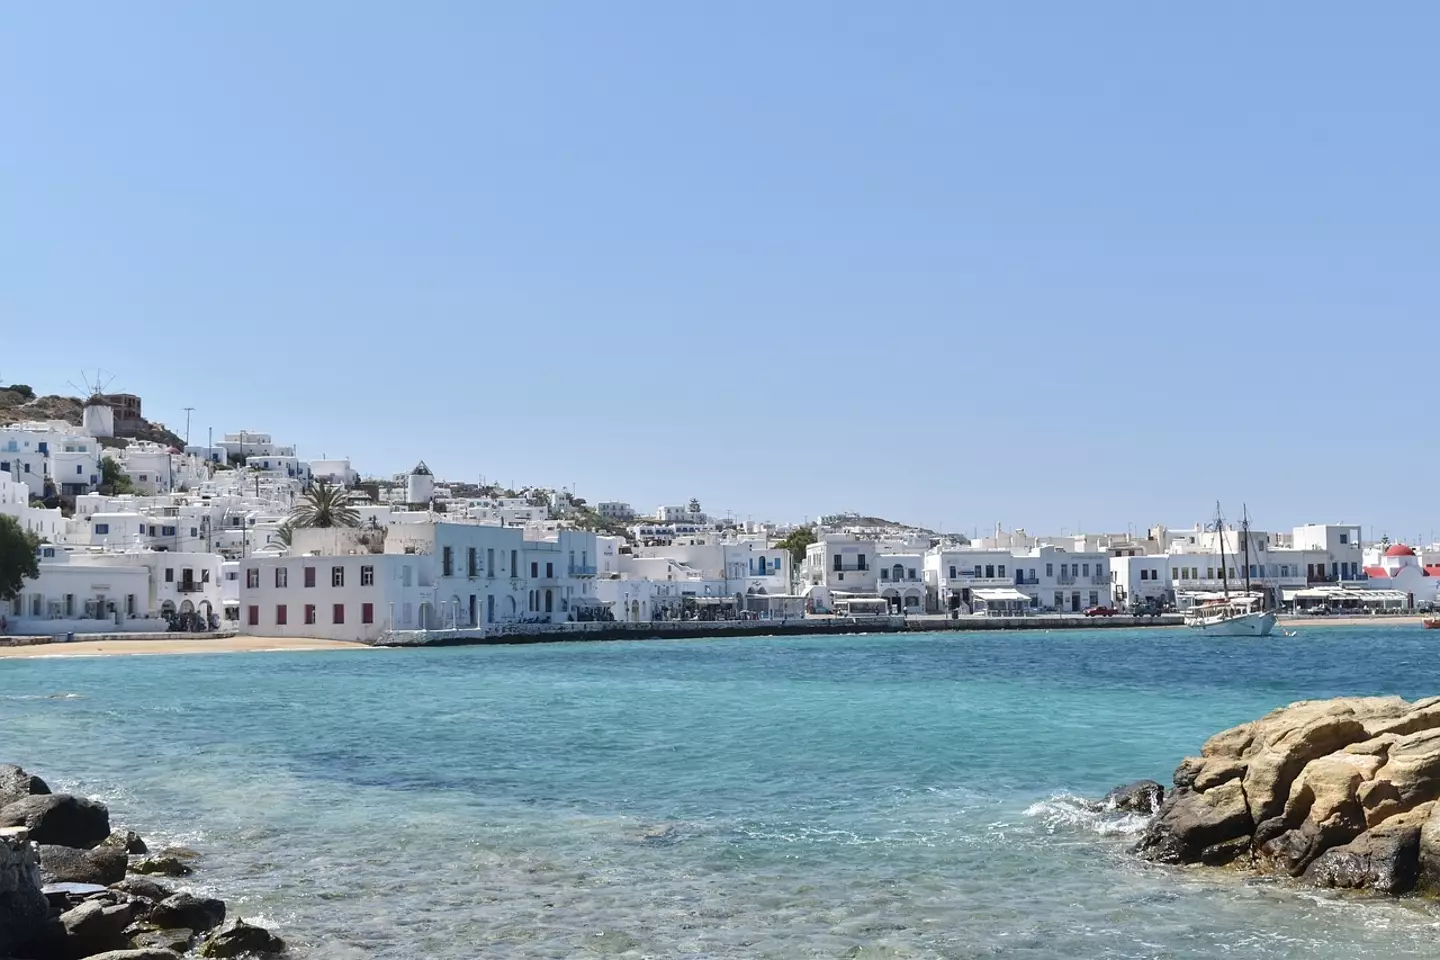 Mykonos is the most popular Greek island amongst Brits.